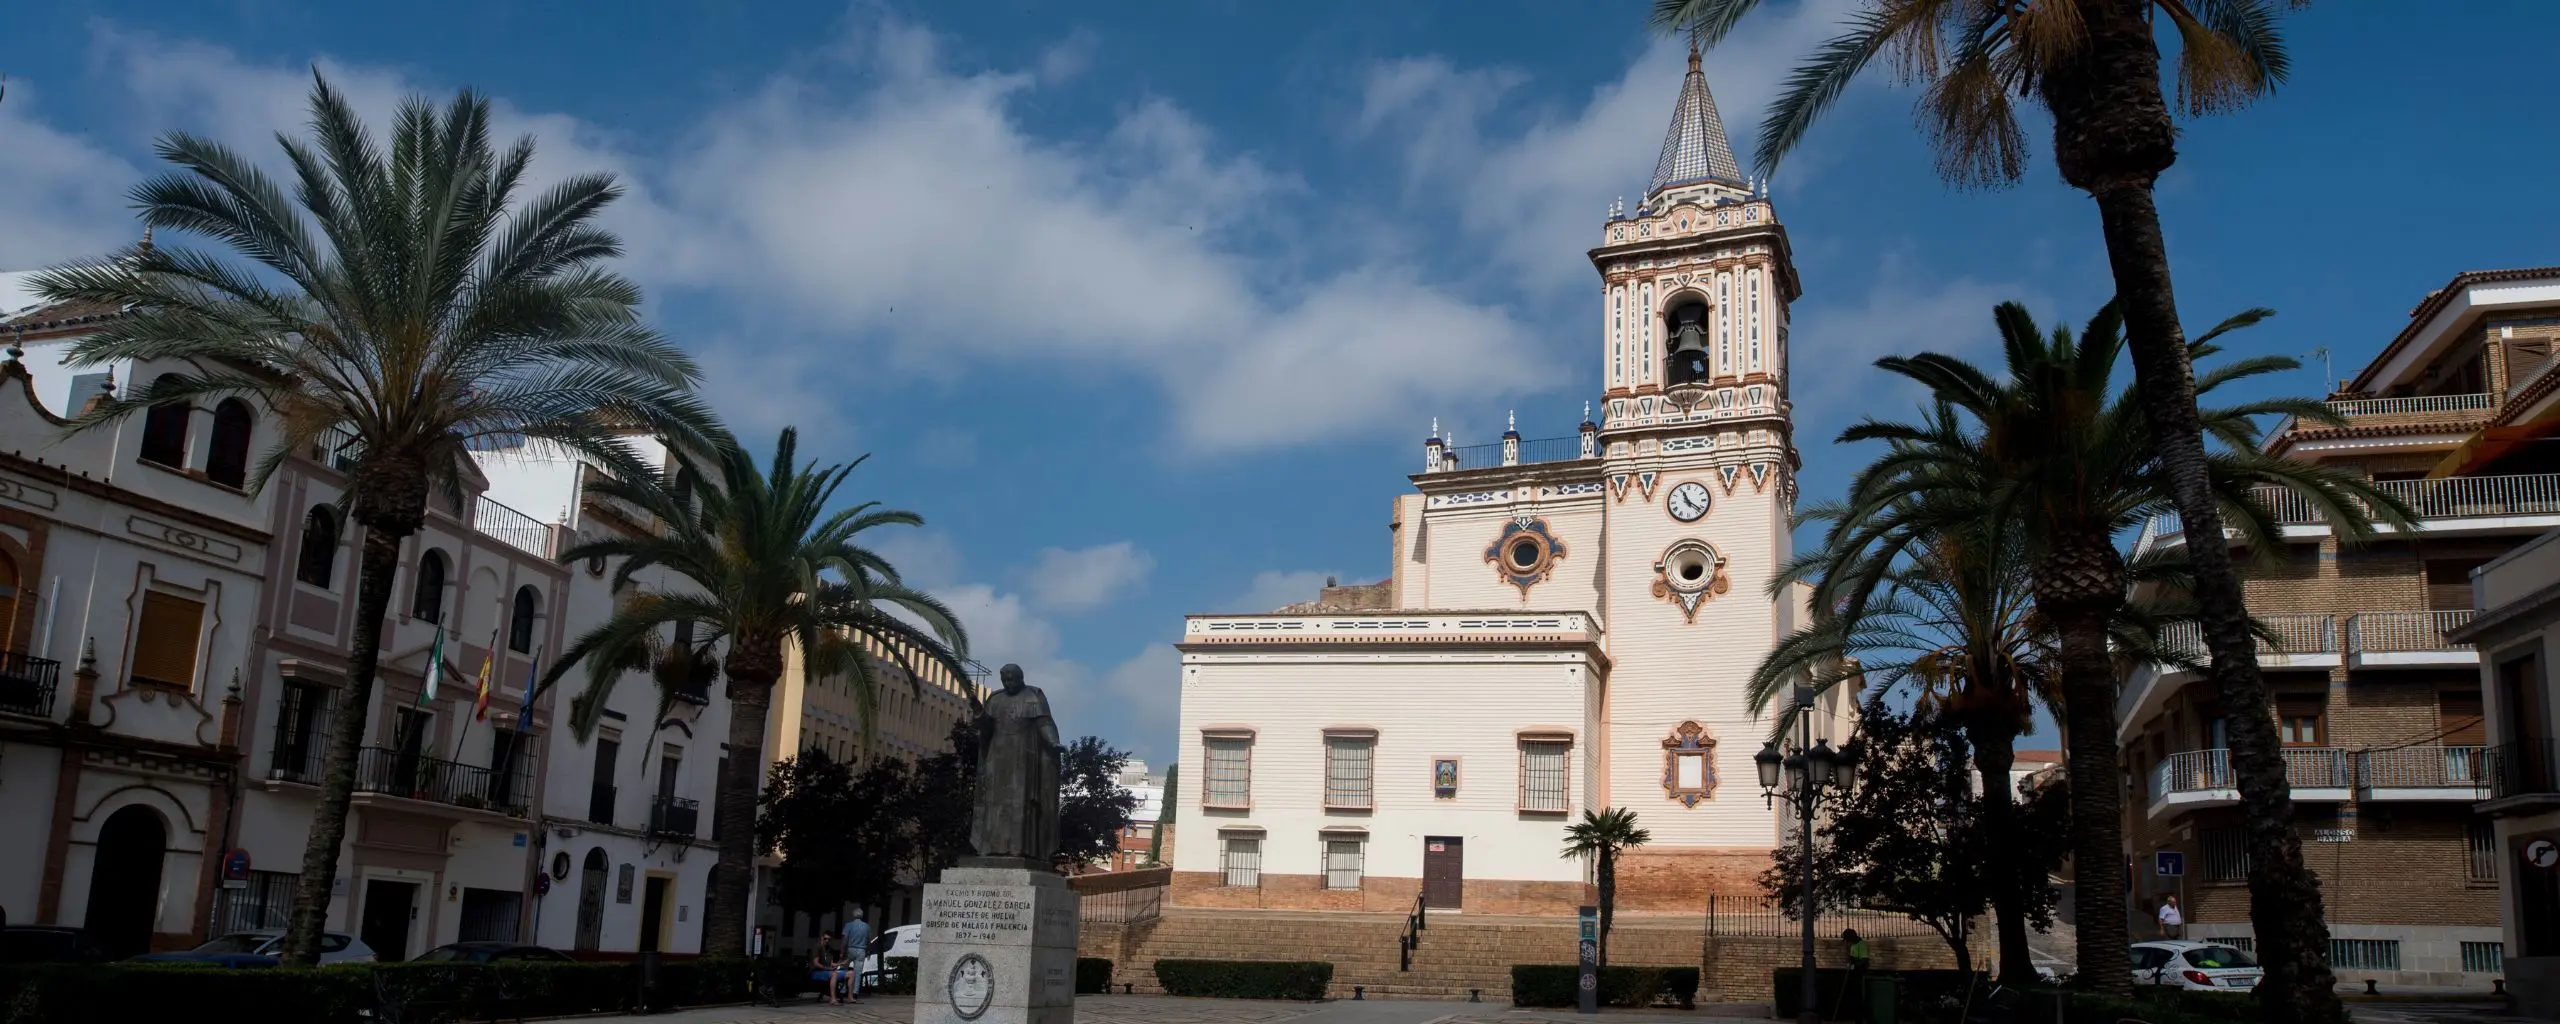 Iglesia San Pedro, Huelva